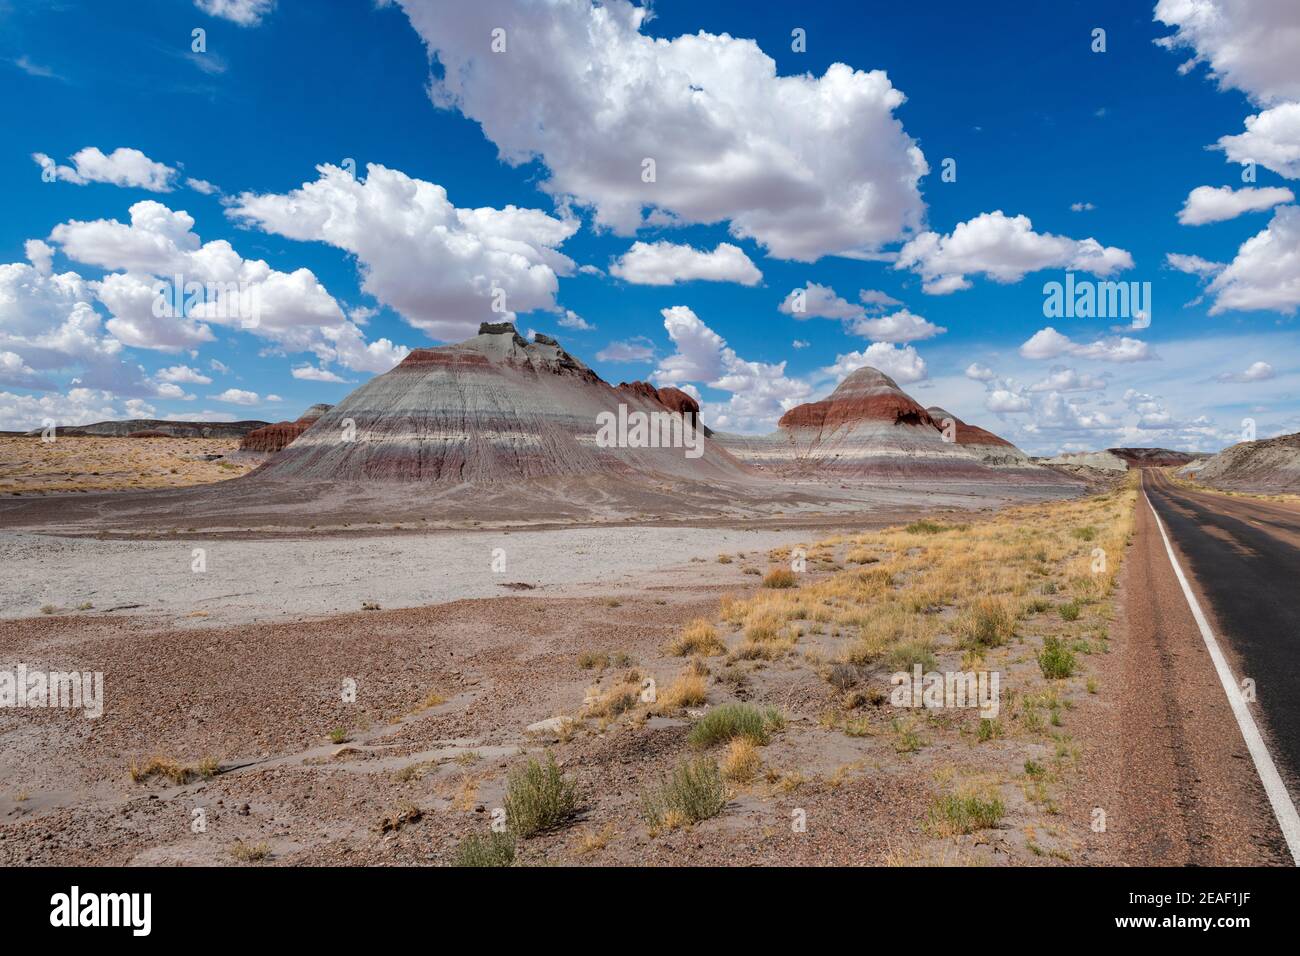 Landschaftlich reizvolle Ansicht der Formation bekannt als die Teepes, im Petrified Desert National Park, im Bundesstaat Arizona, USA; Konzept für Reisen in Amerika Stockfoto